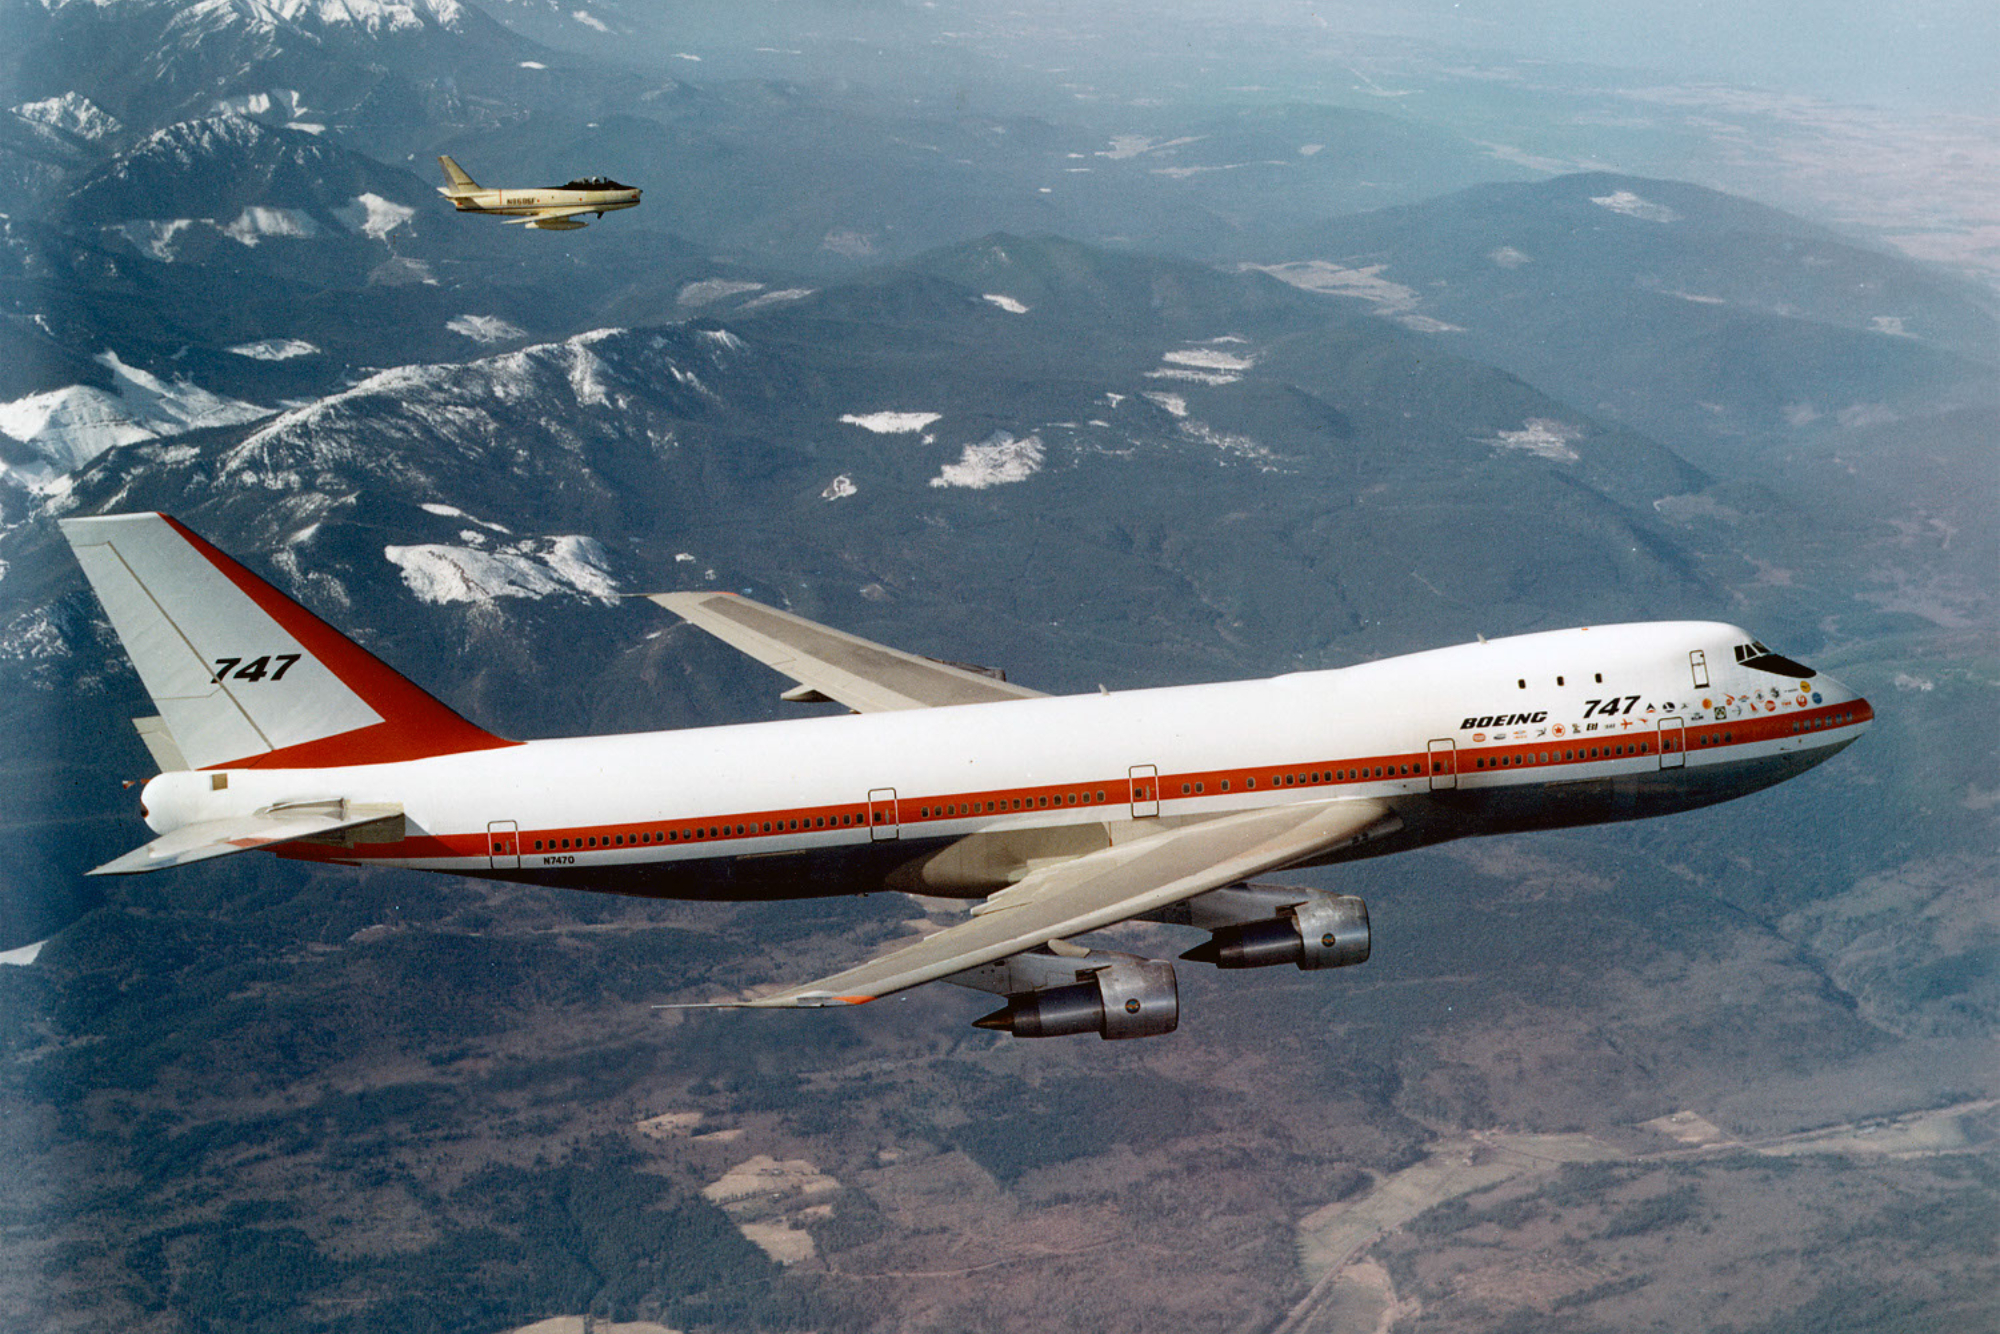 Breitling Navitimer B01 Chronograph Boeing 747